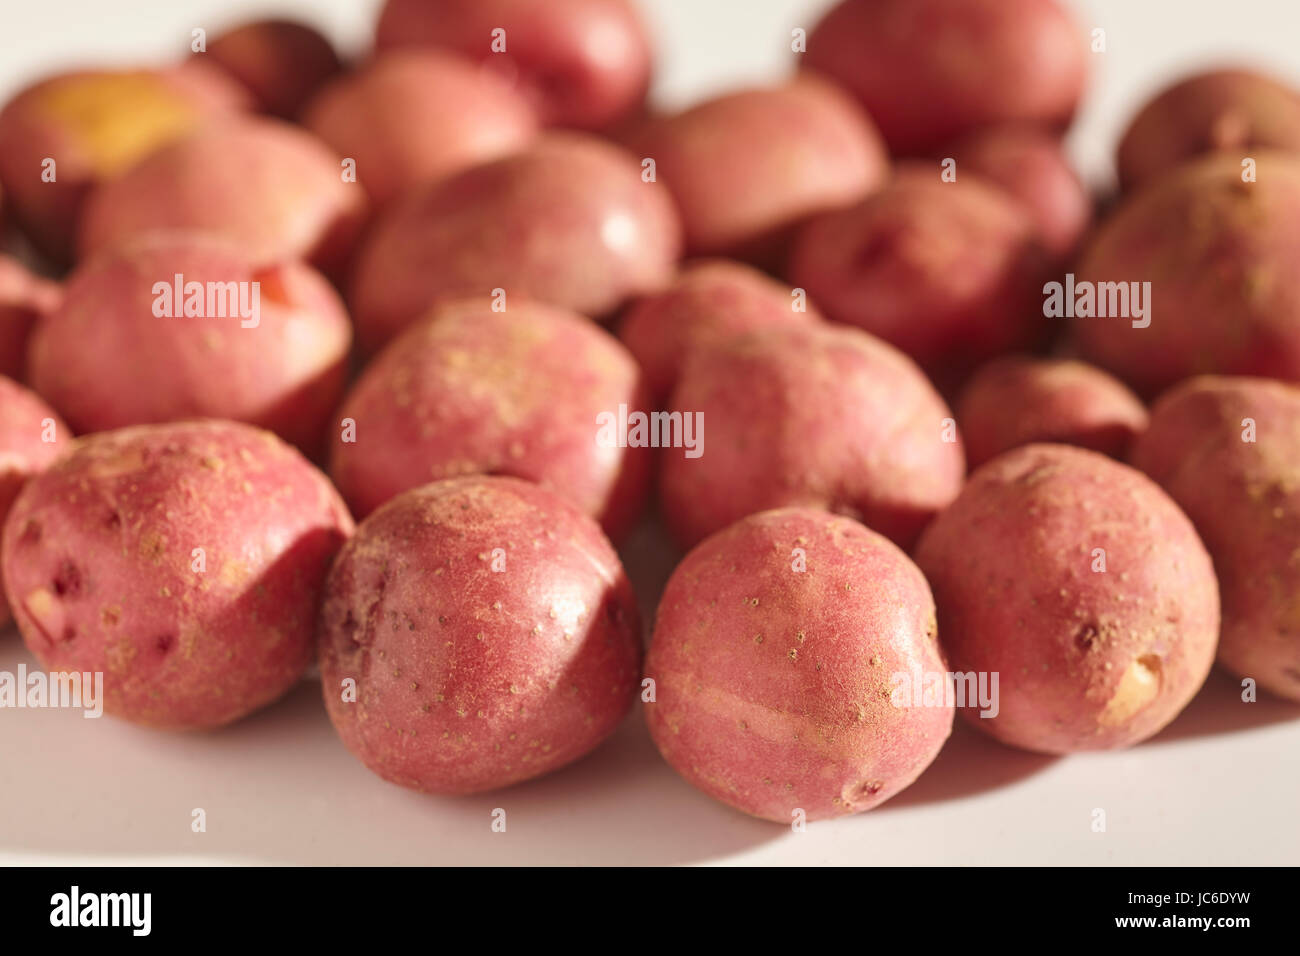 fresh, raw, baby potatoes Stock Photo